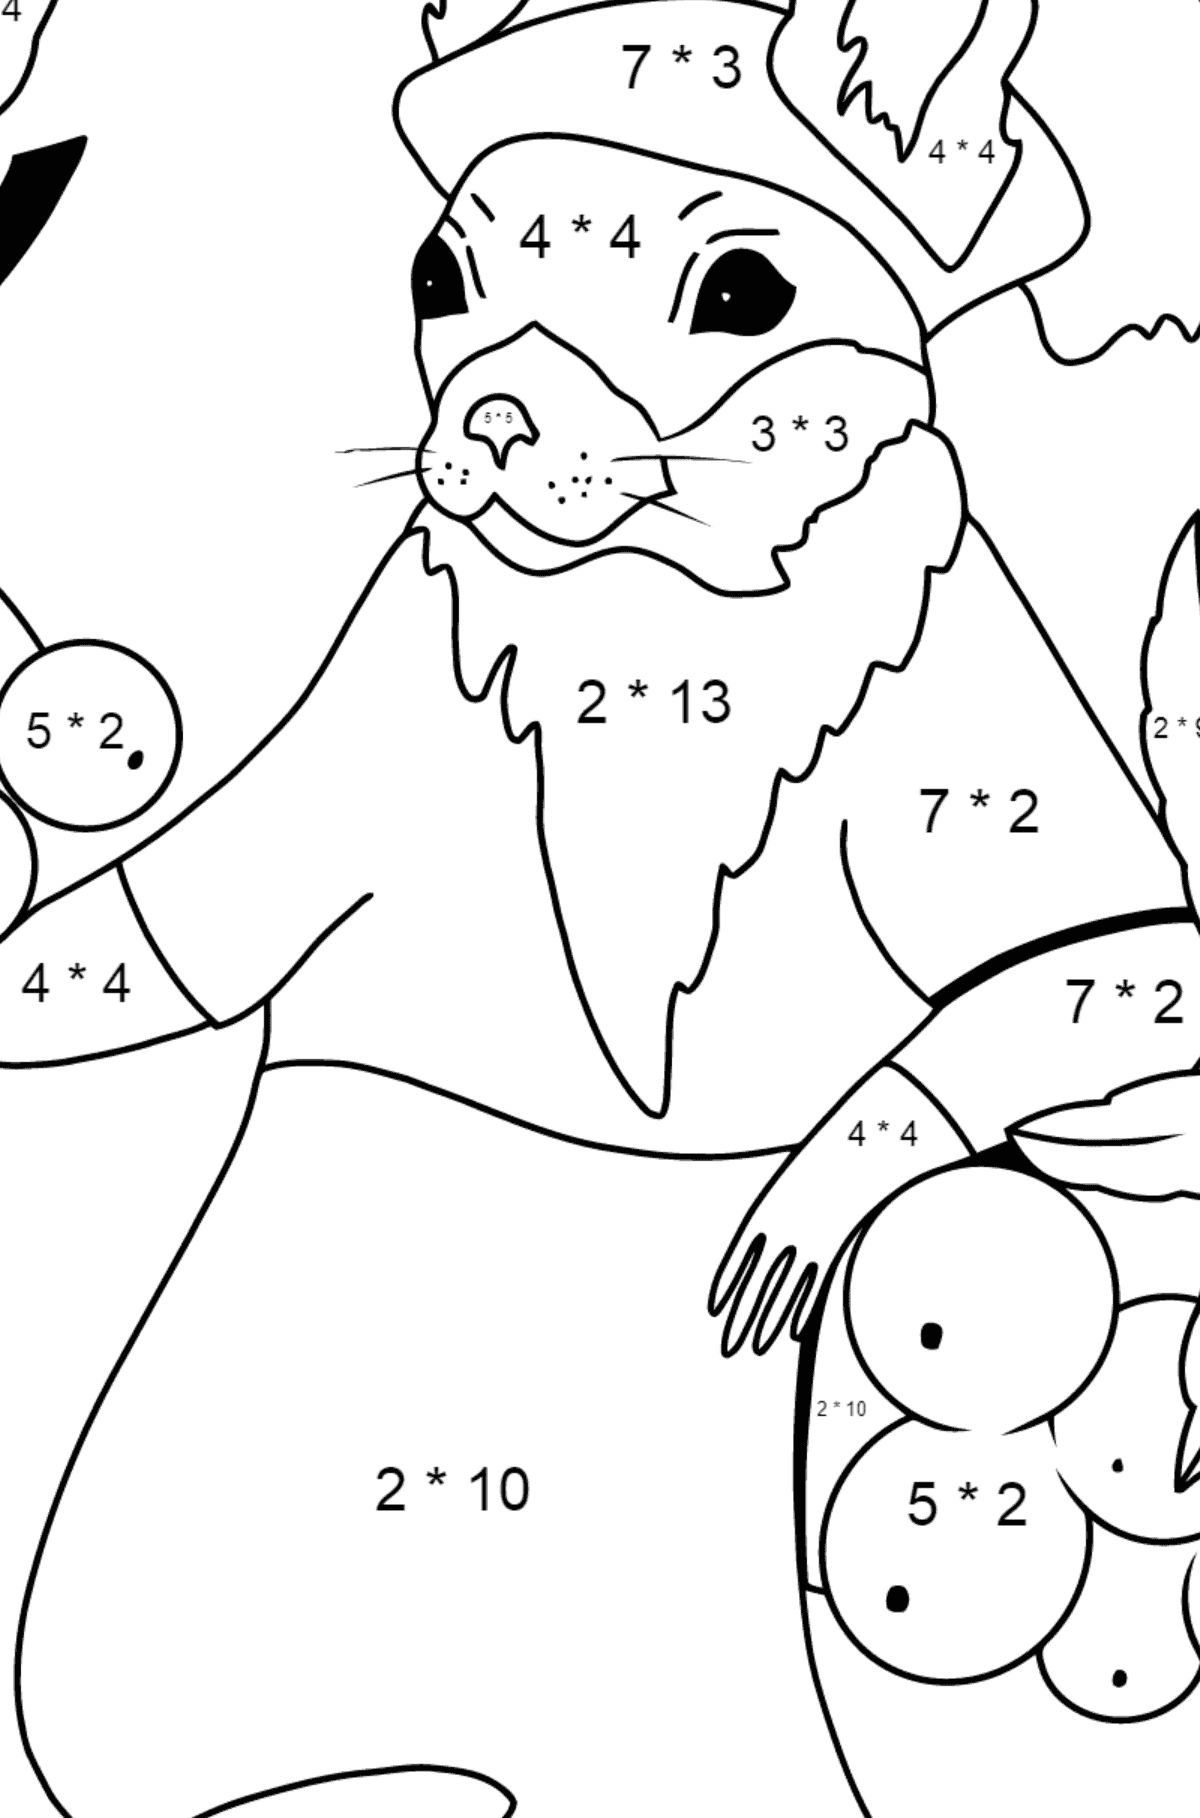 Herbstliche Ausmalseite - Ein Eichhörnchen mit Vogelbeeren - Mathe Ausmalbilder - Multiplikation für Kinder